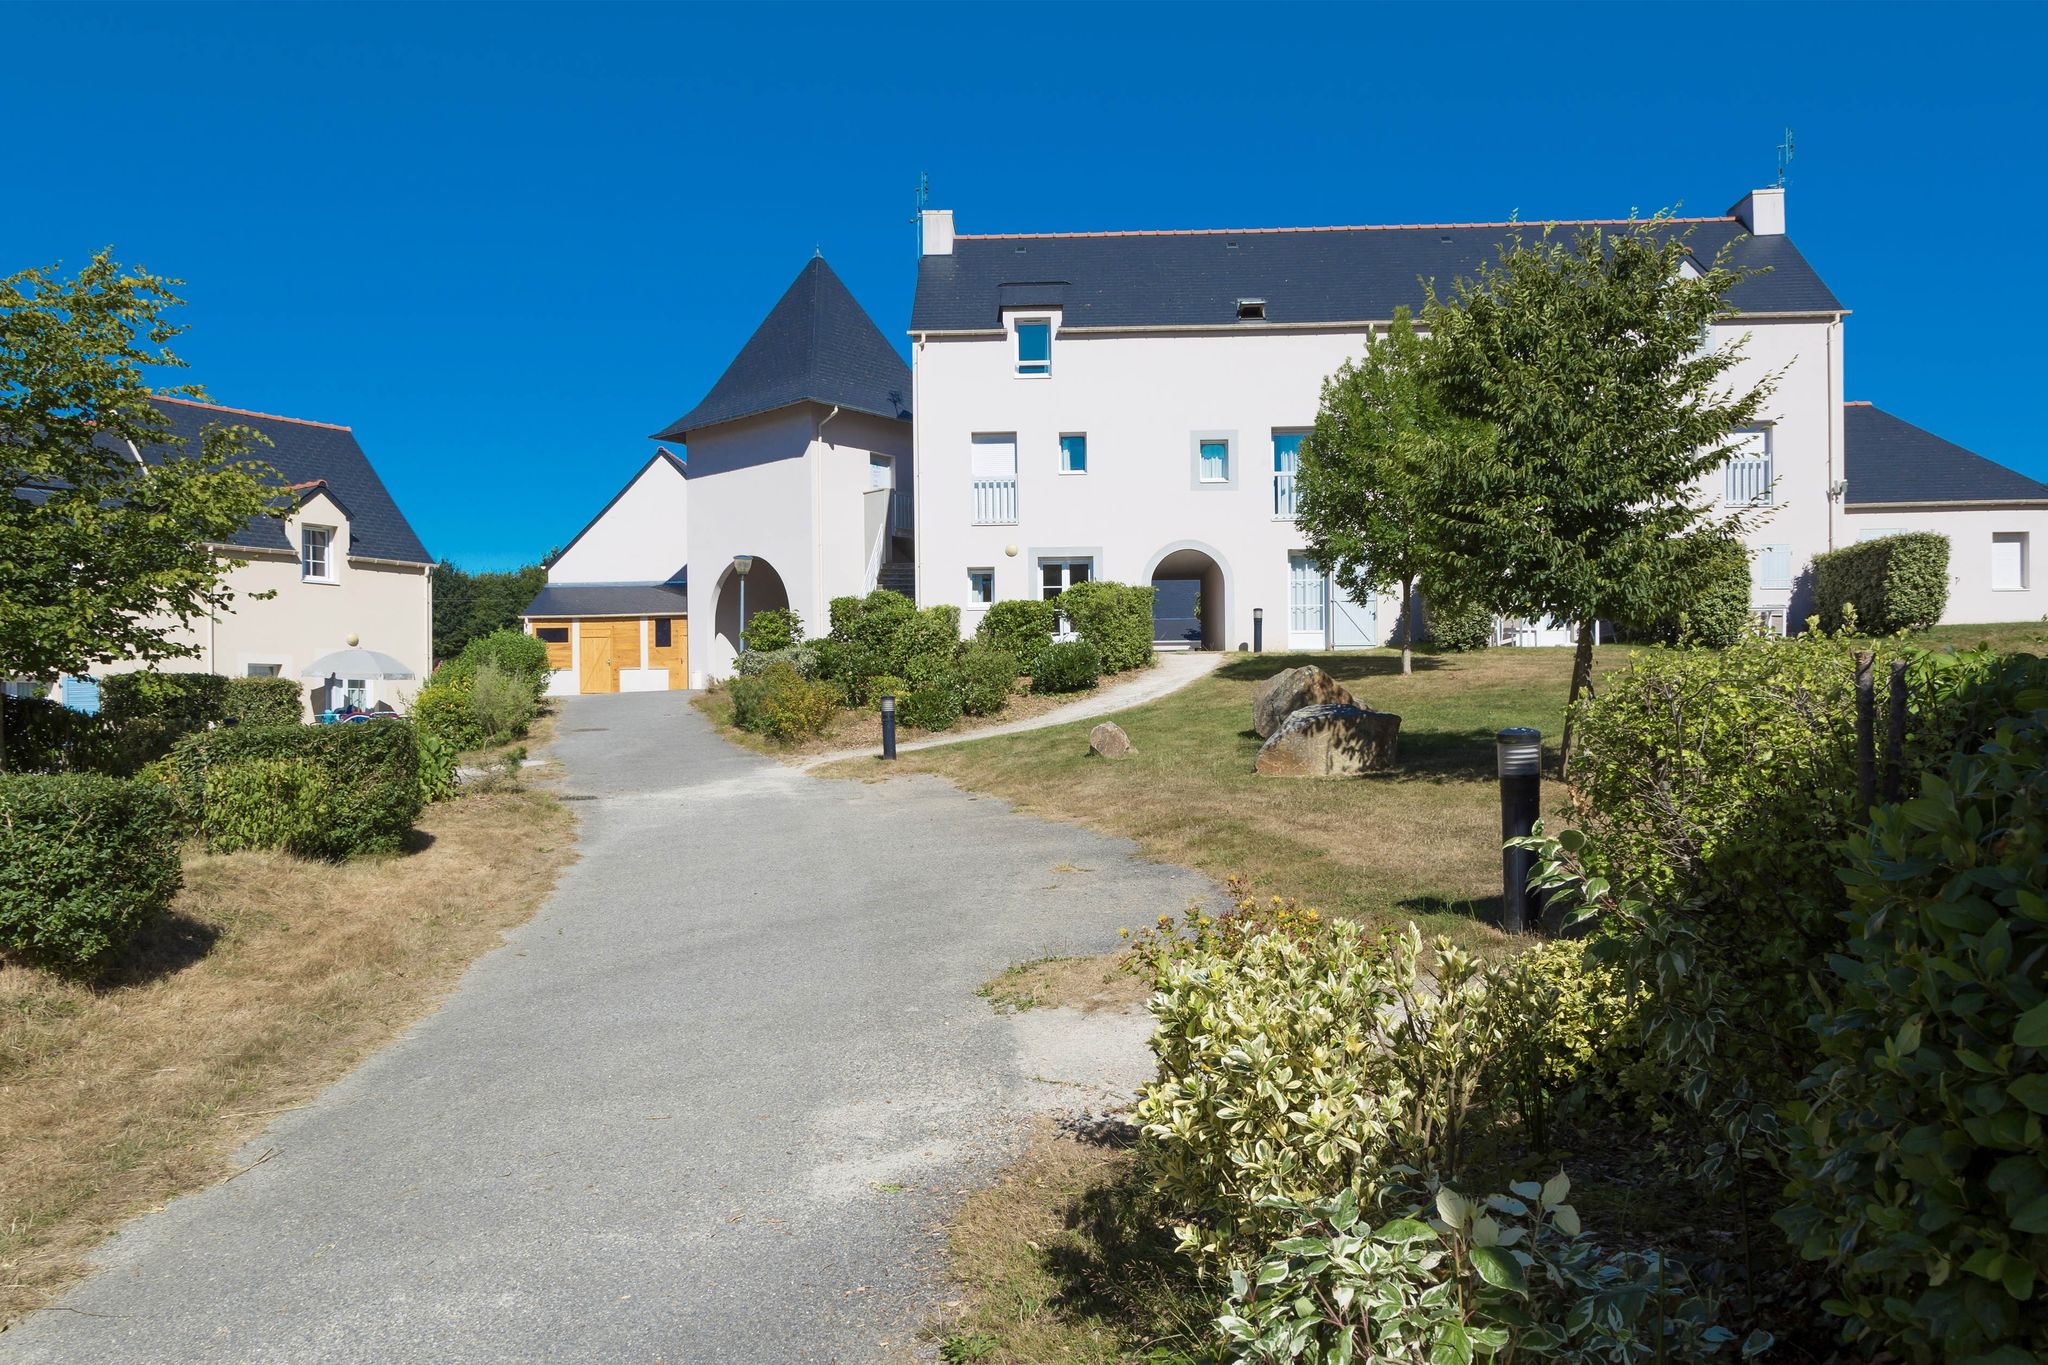 Doppelhaushälfte in der schönen, historischen Bretagne